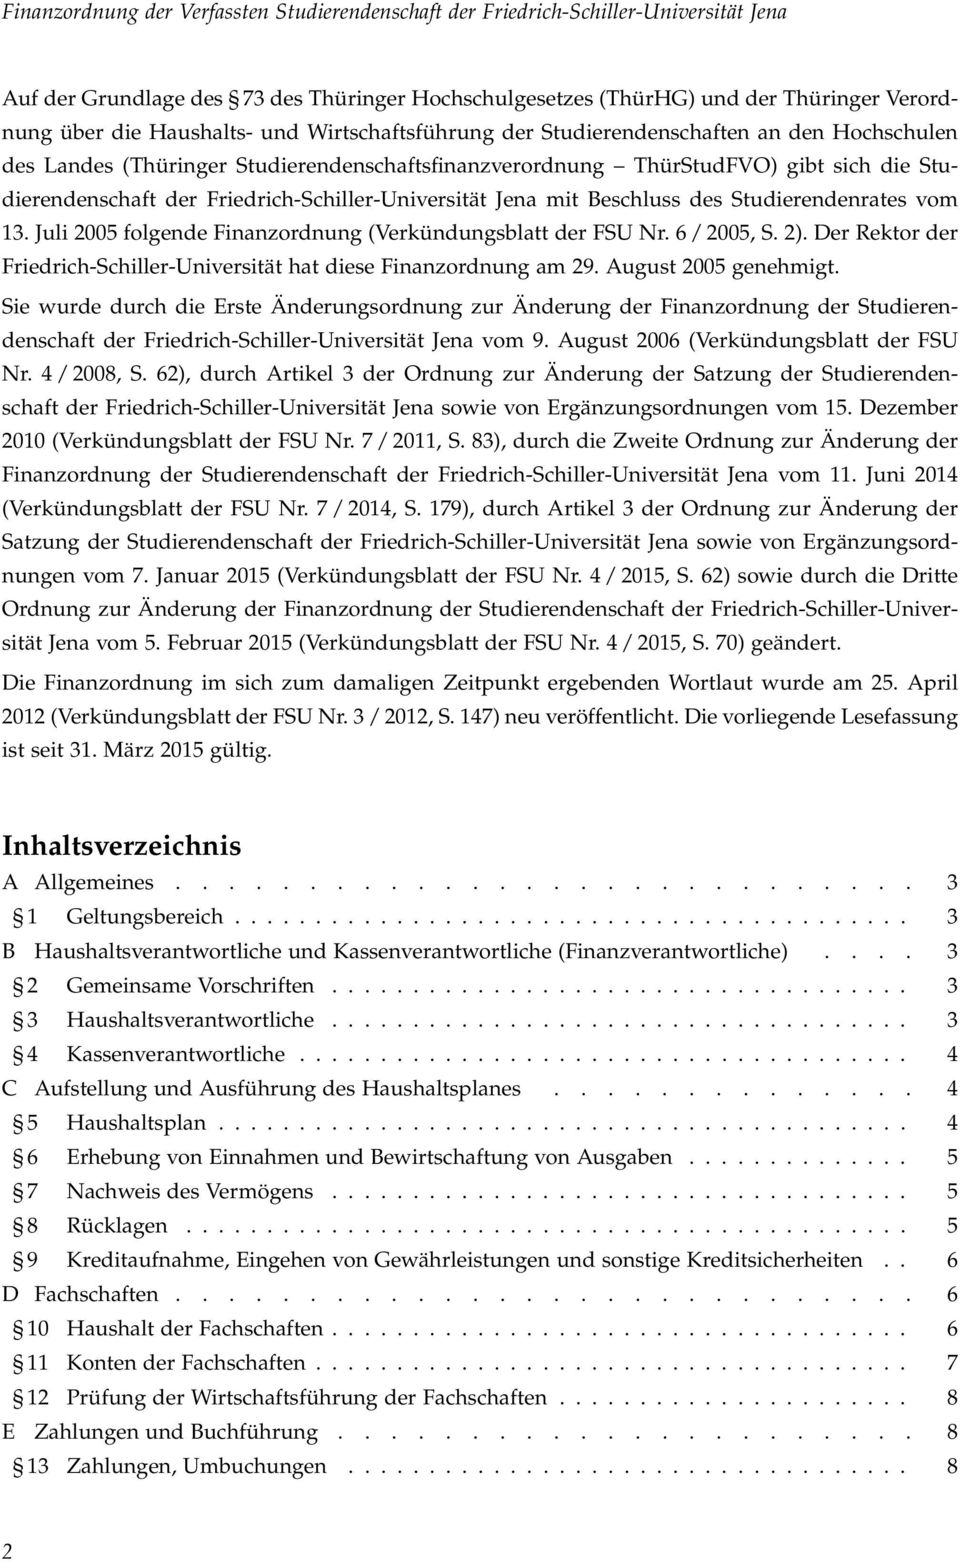 Juli 2005 folgende Finanzordnung (Verkündungsblatt der FSU Nr. 6 / 2005, S. 2). Der Rektor der Friedrich-Schiller-Universität hat diese Finanzordnung am 29. August 2005 genehmigt.